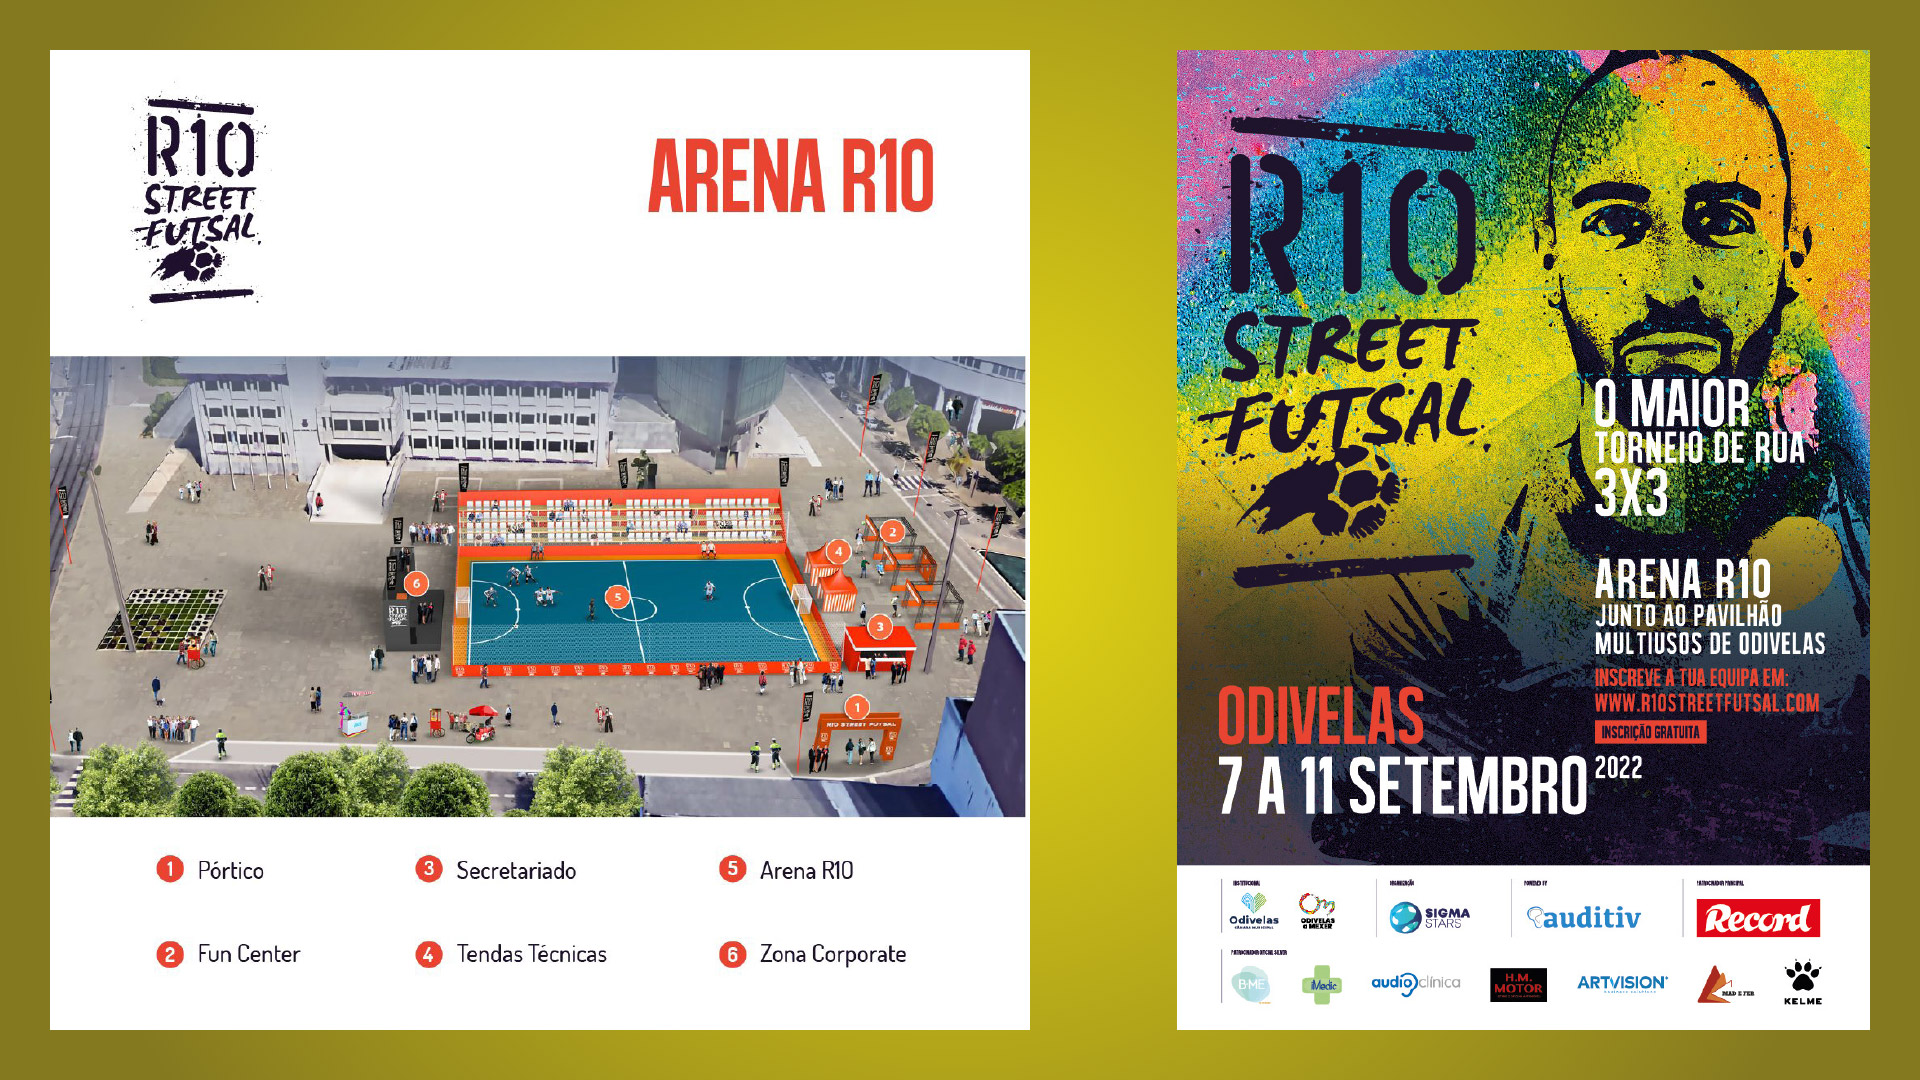 R10 Street Futsal, 7 a 11 de setembro, com Ricardinho como patrono